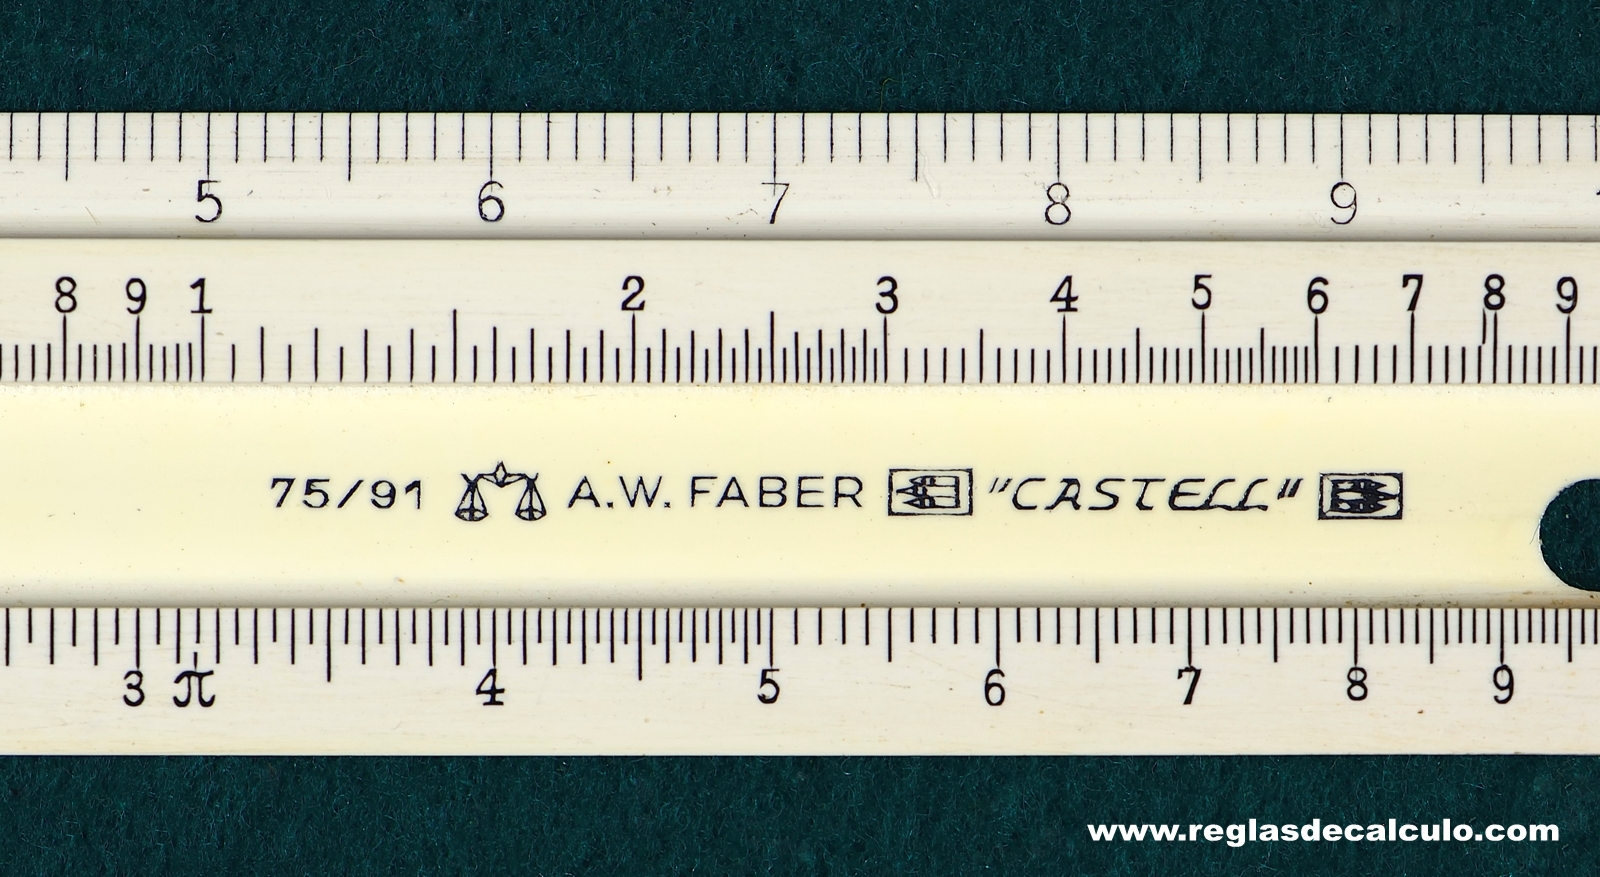 Faber Castell 74/91 Regla de Calculo Slide rule